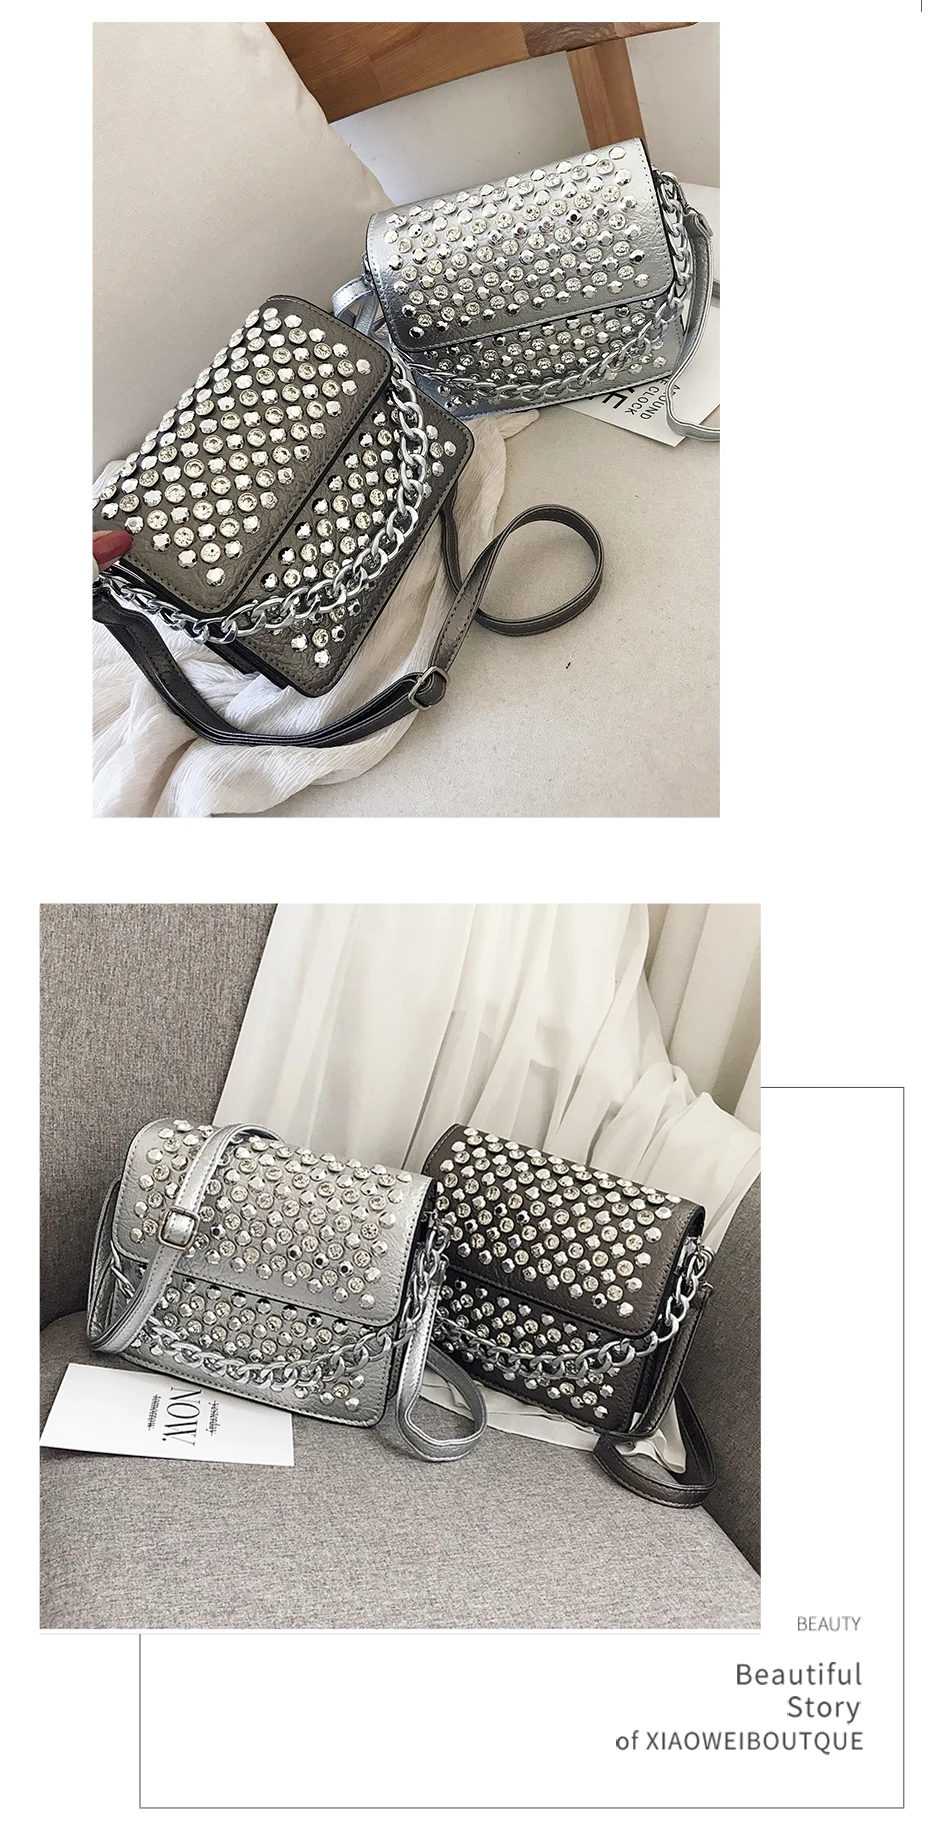 JIEROTYX женская сумка новая трендовая сумка с заклепками модная сумка через плечо с цепочкой черная сумочка для монет дизайнерский дизайн